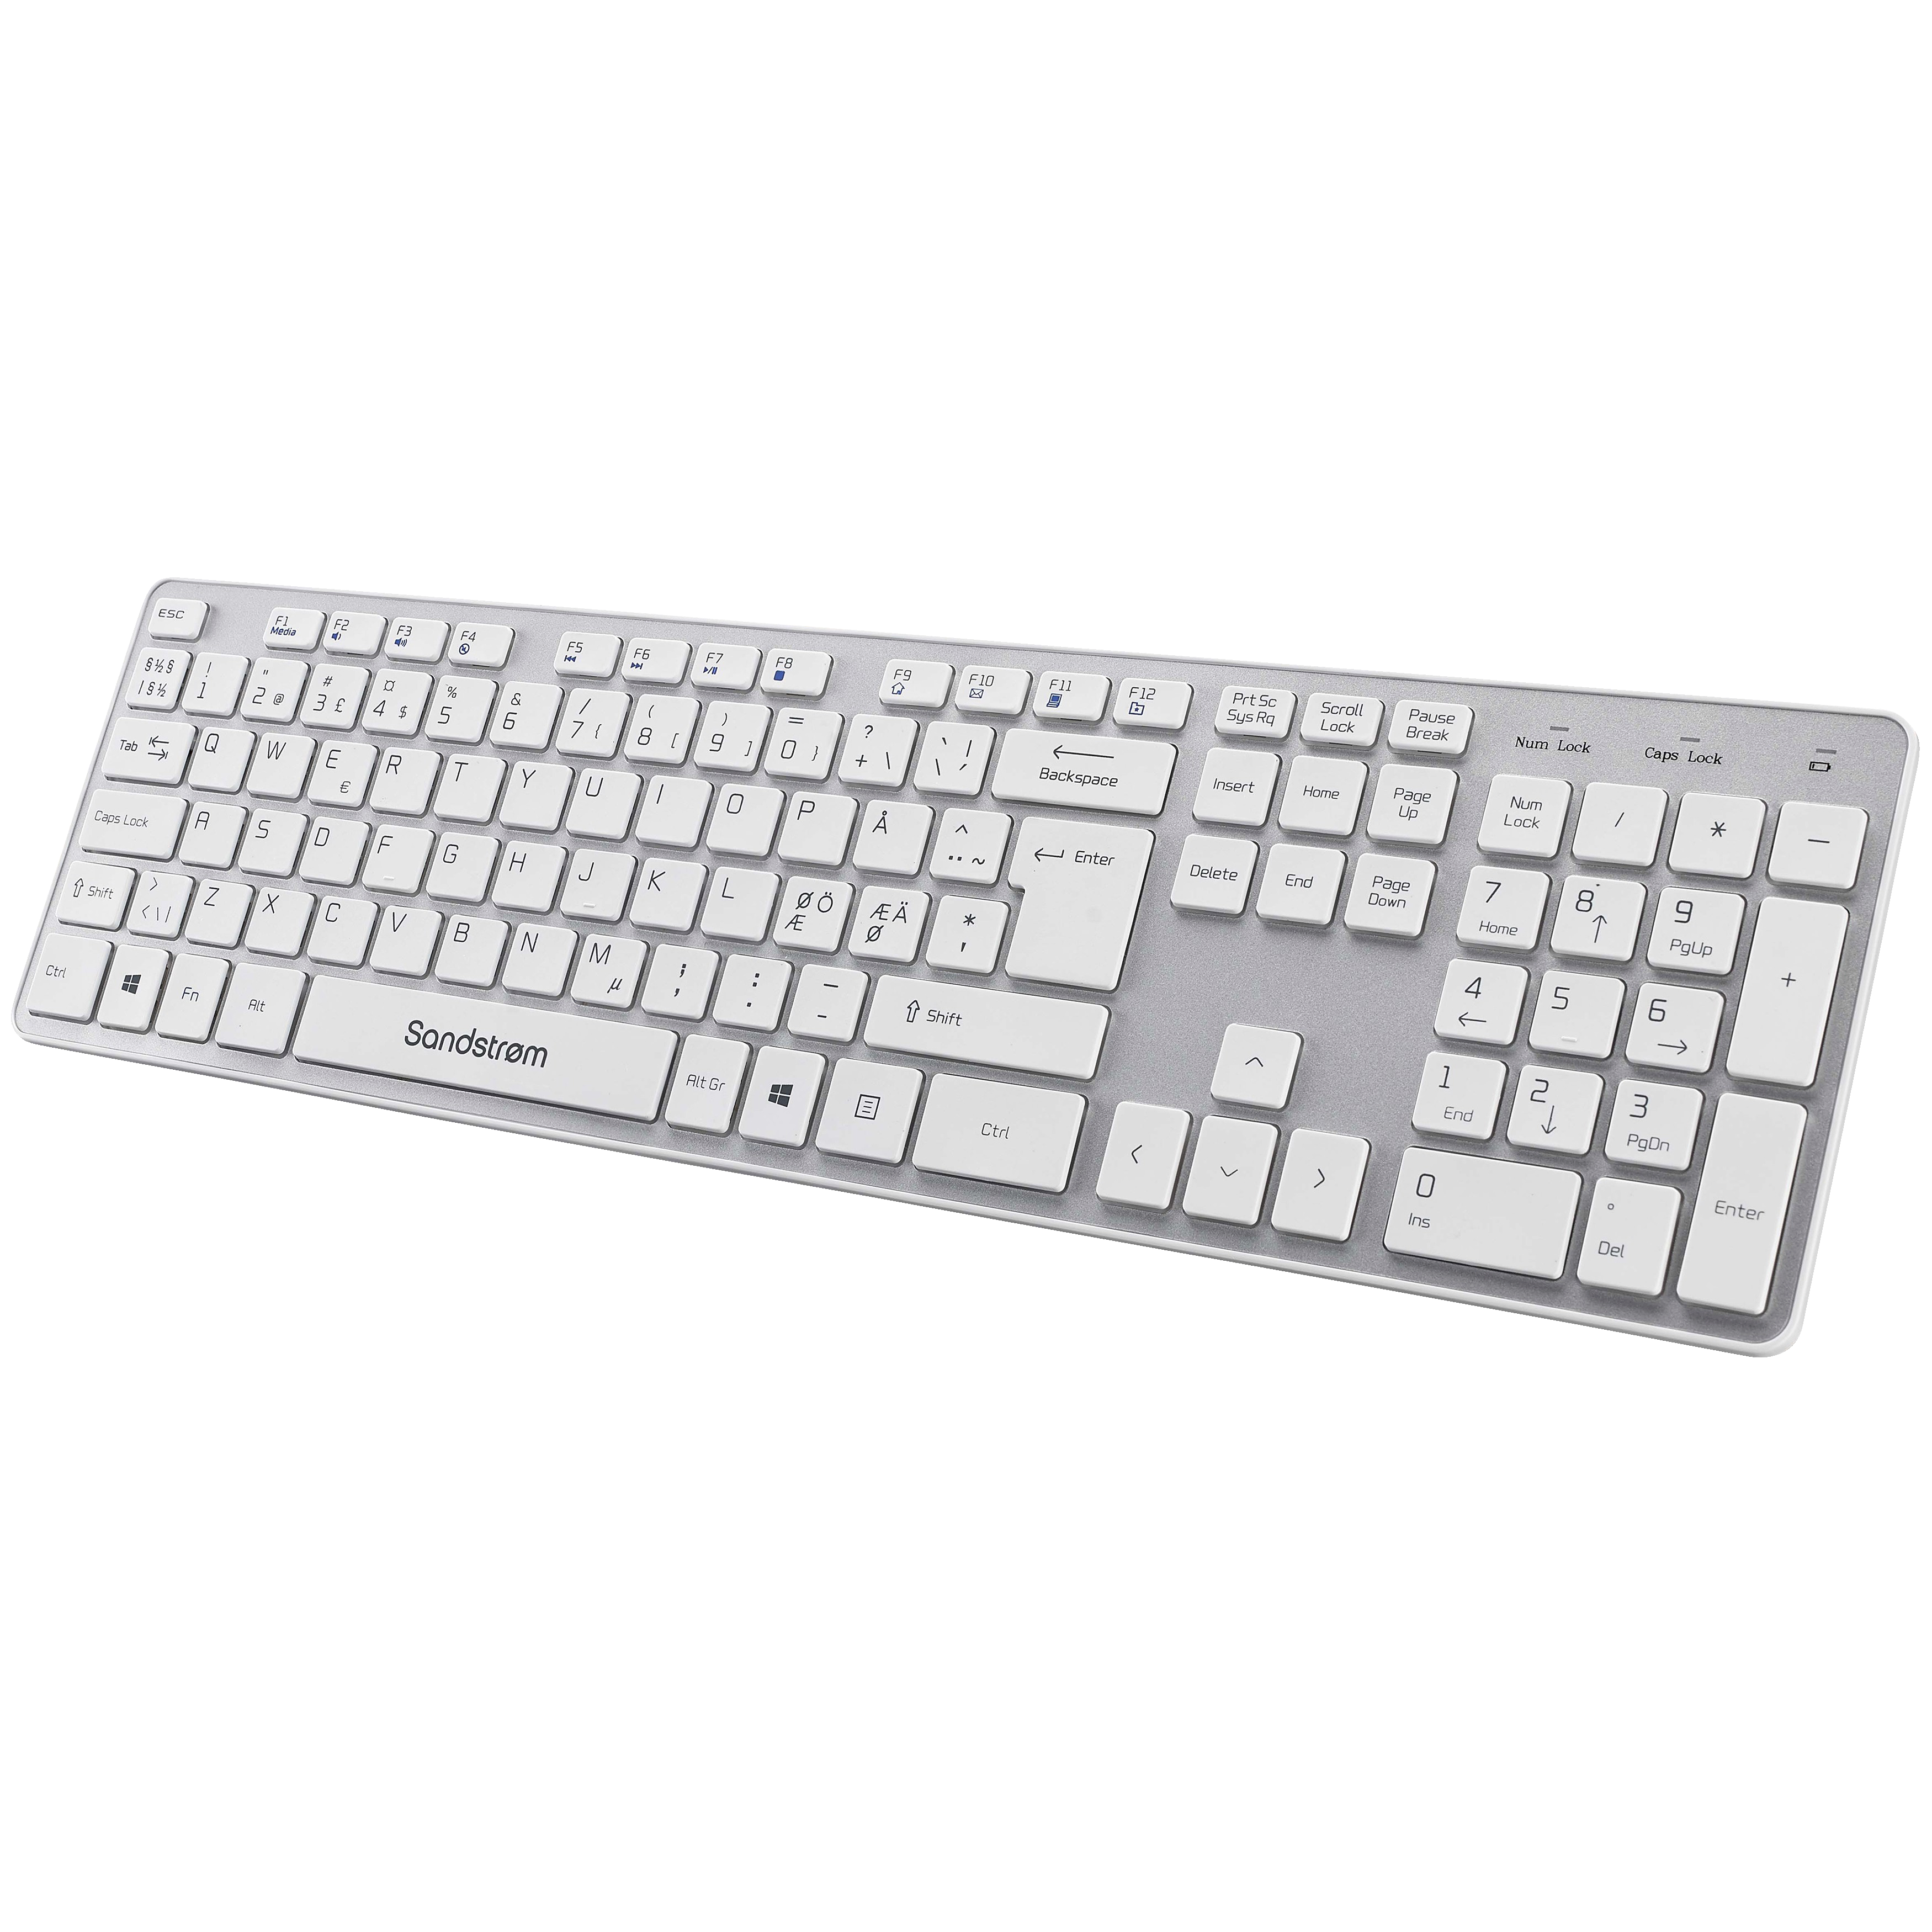 Sandstrøm slimmat trådlöst tangentbord (vit, grå) - Tangentbord - Elgiganten